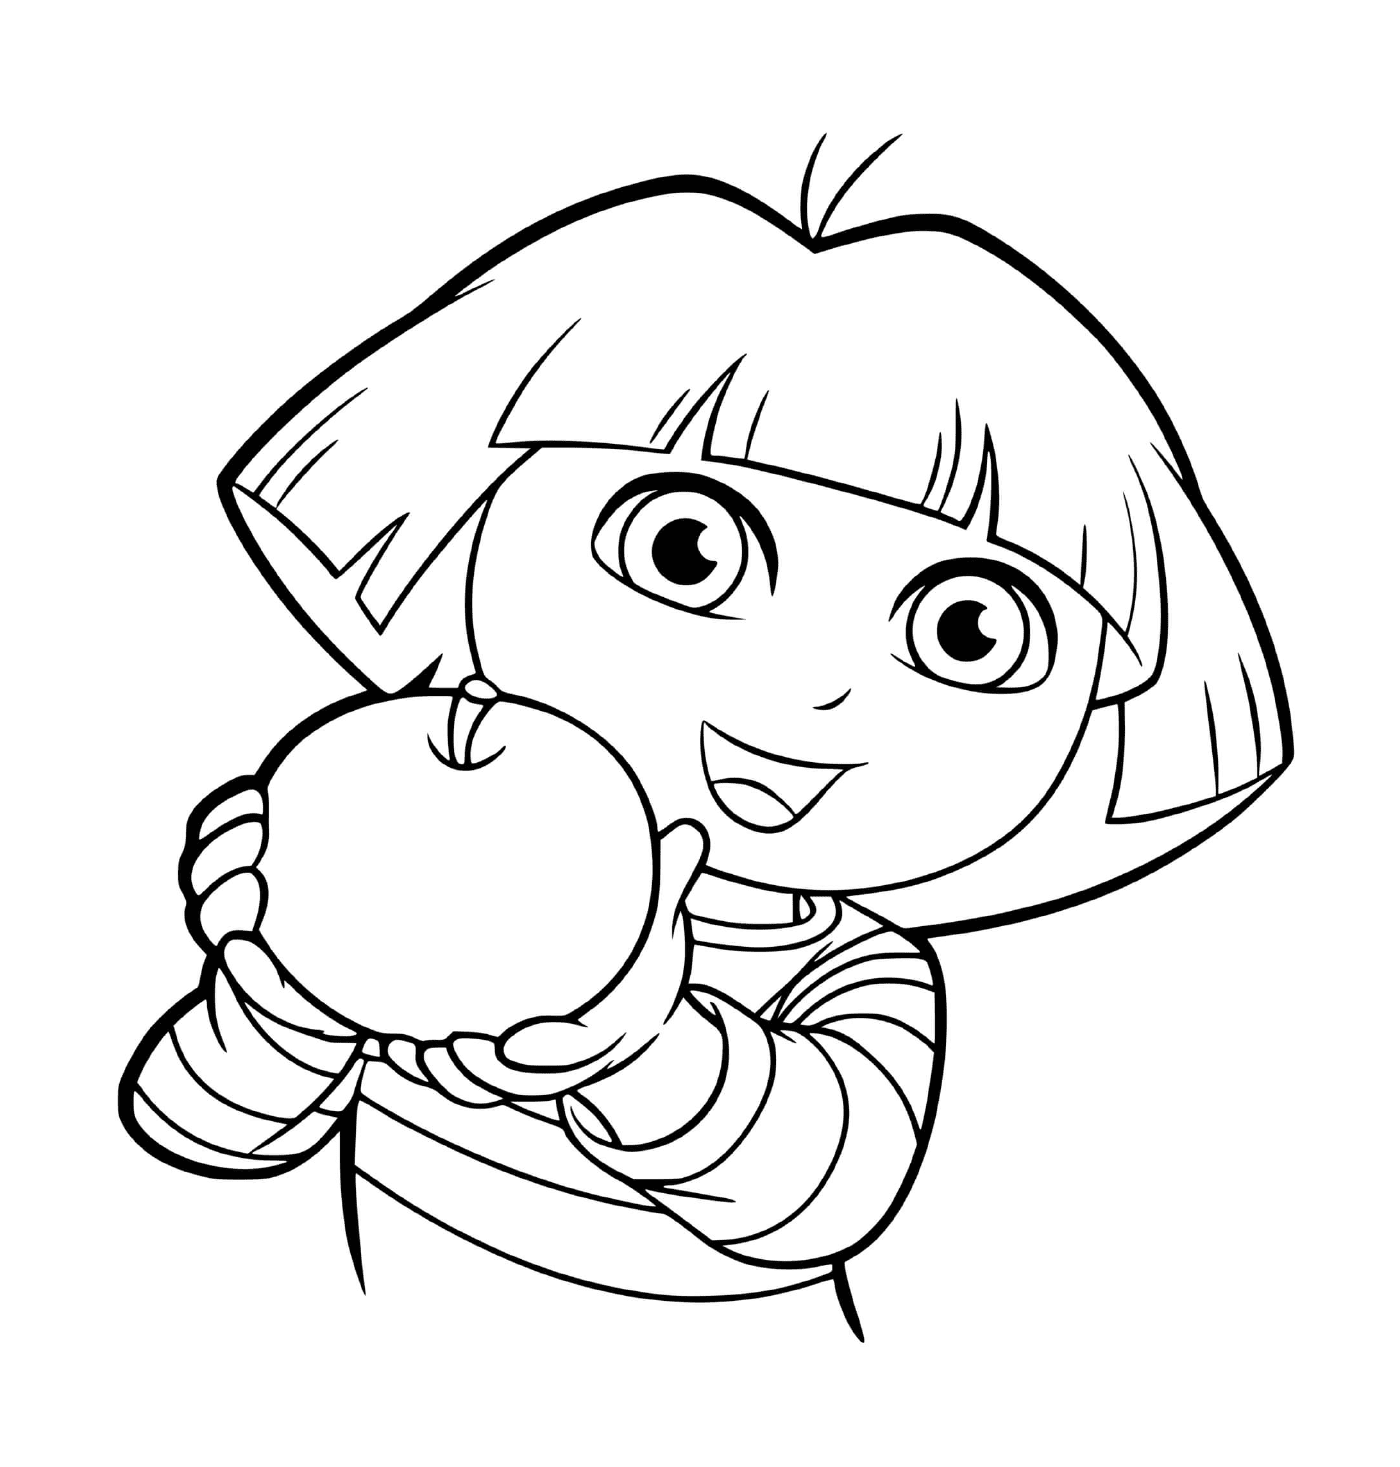  Дора любит есть яблоки с аппетитом 